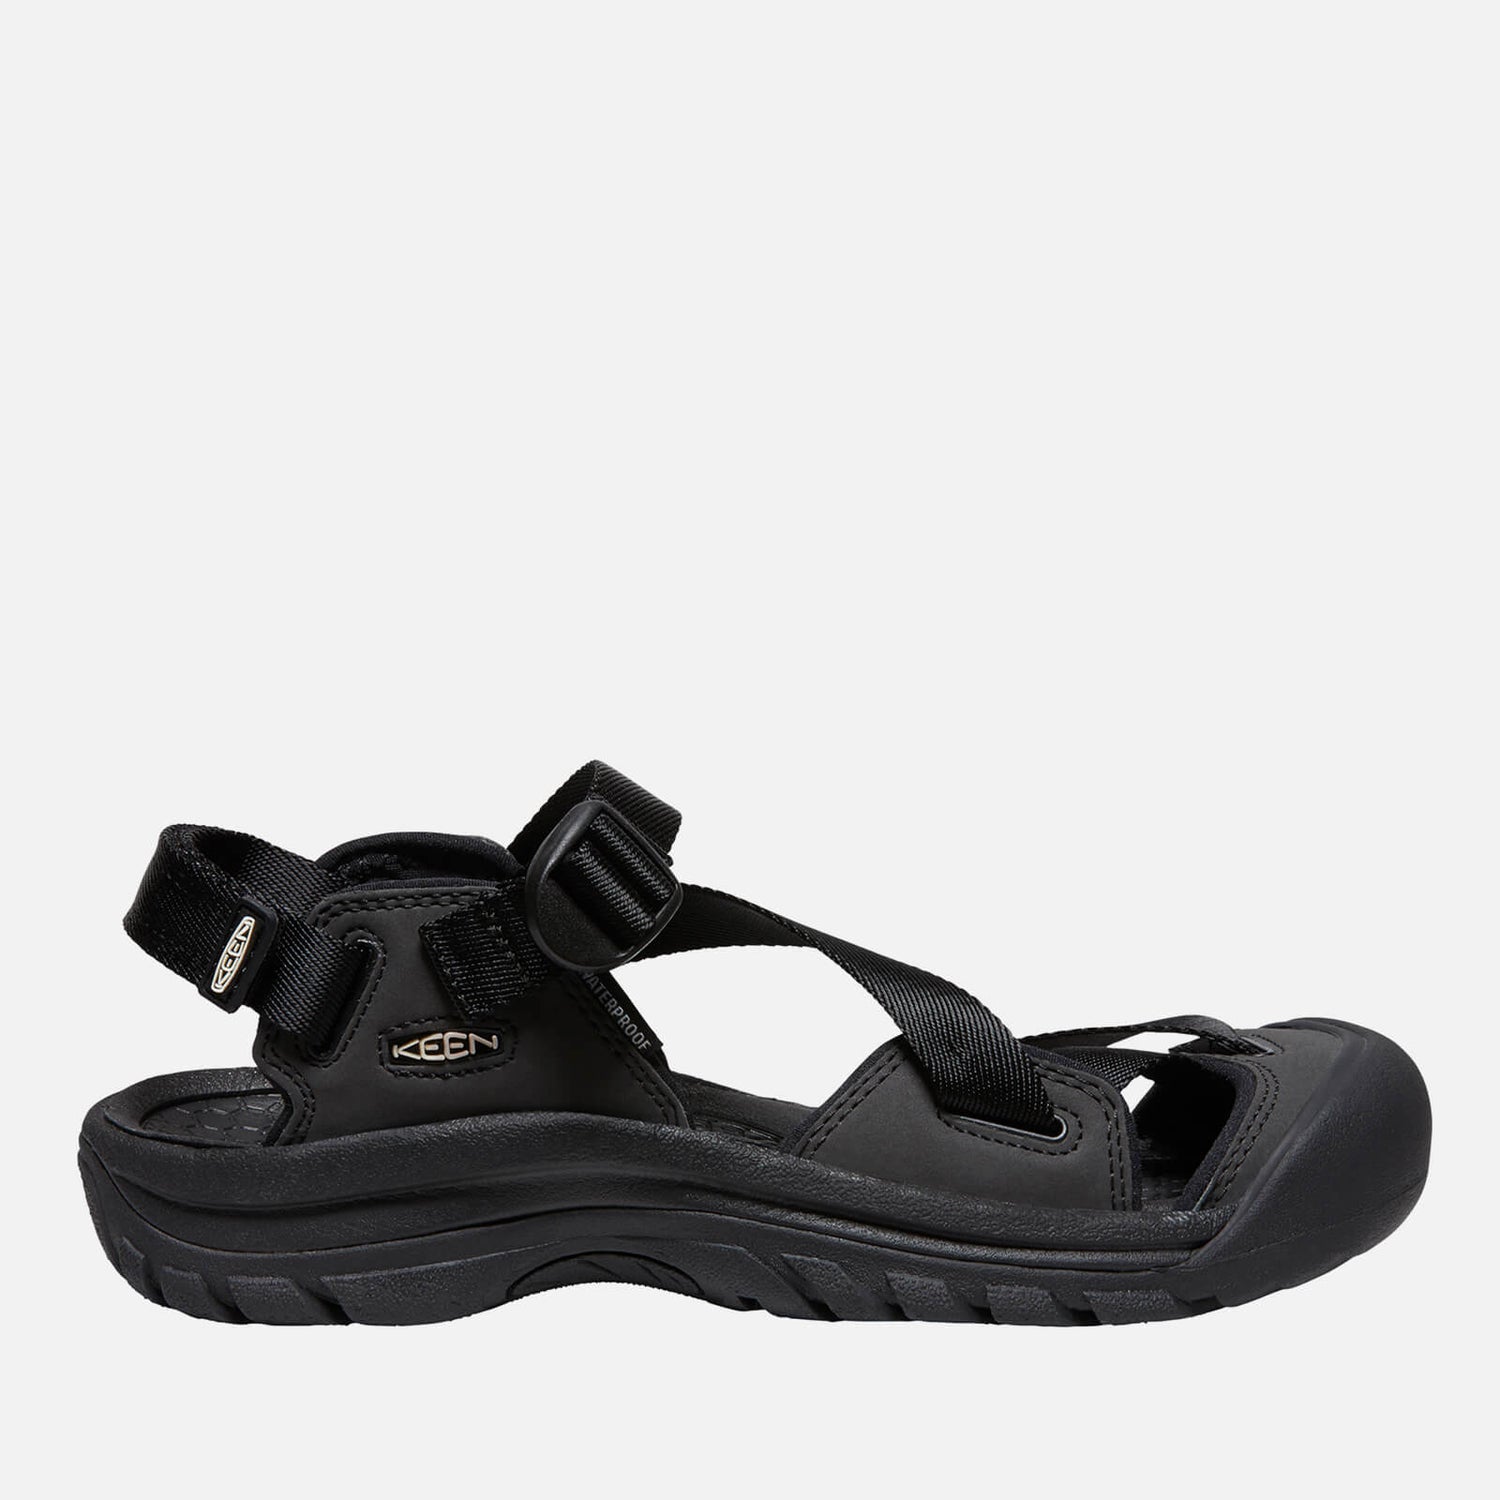 Keen Women's Zerraport II Sandals - Black/Black